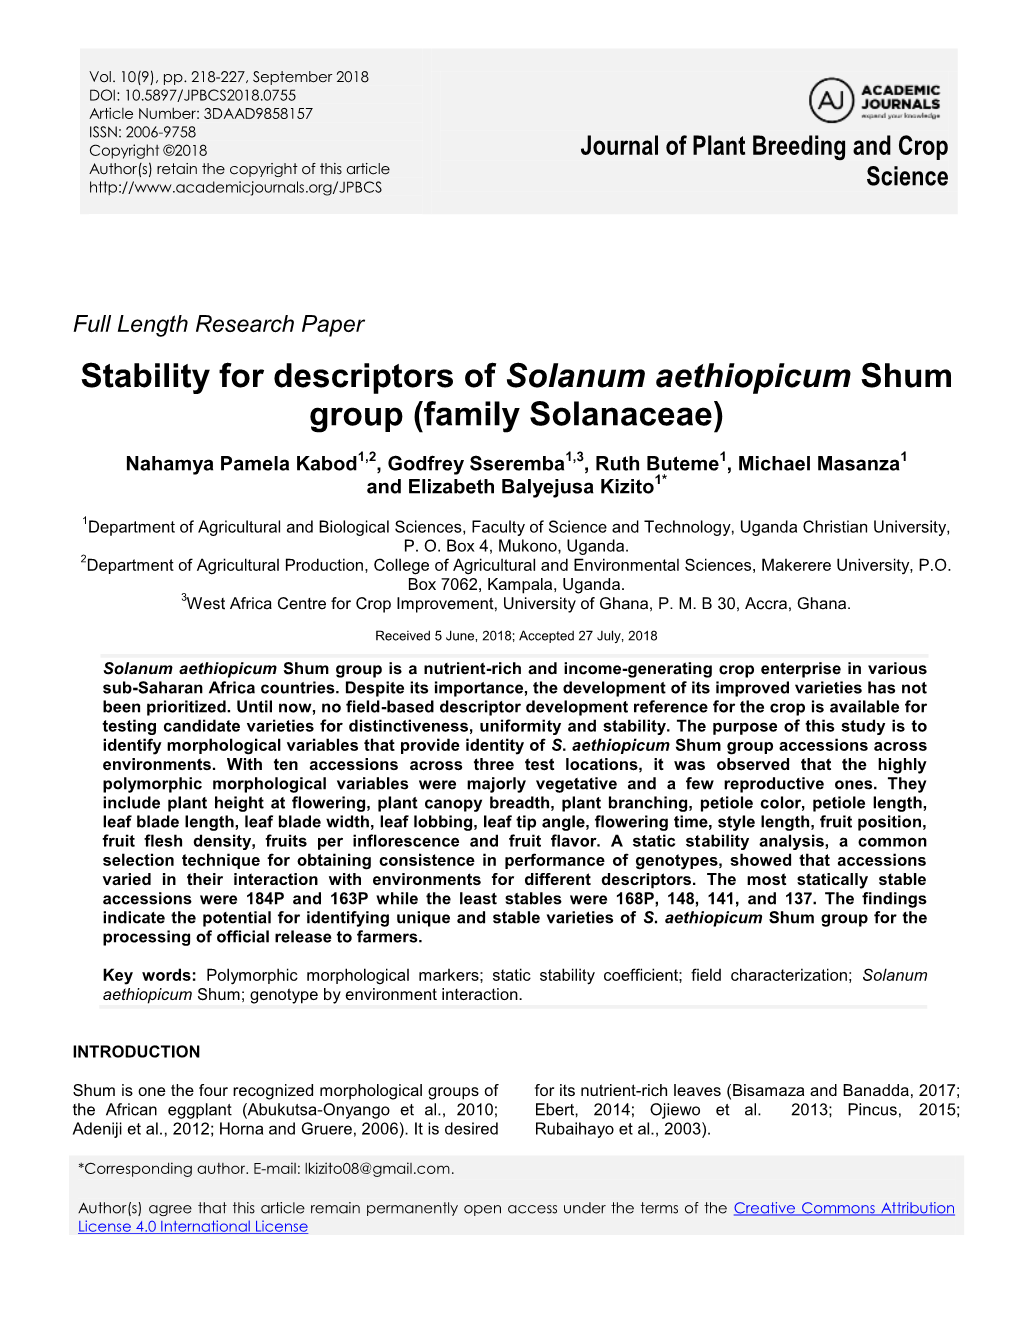 Stability for Descriptors of Solanum Aethiopicum Shum Group (Family Solanaceae)